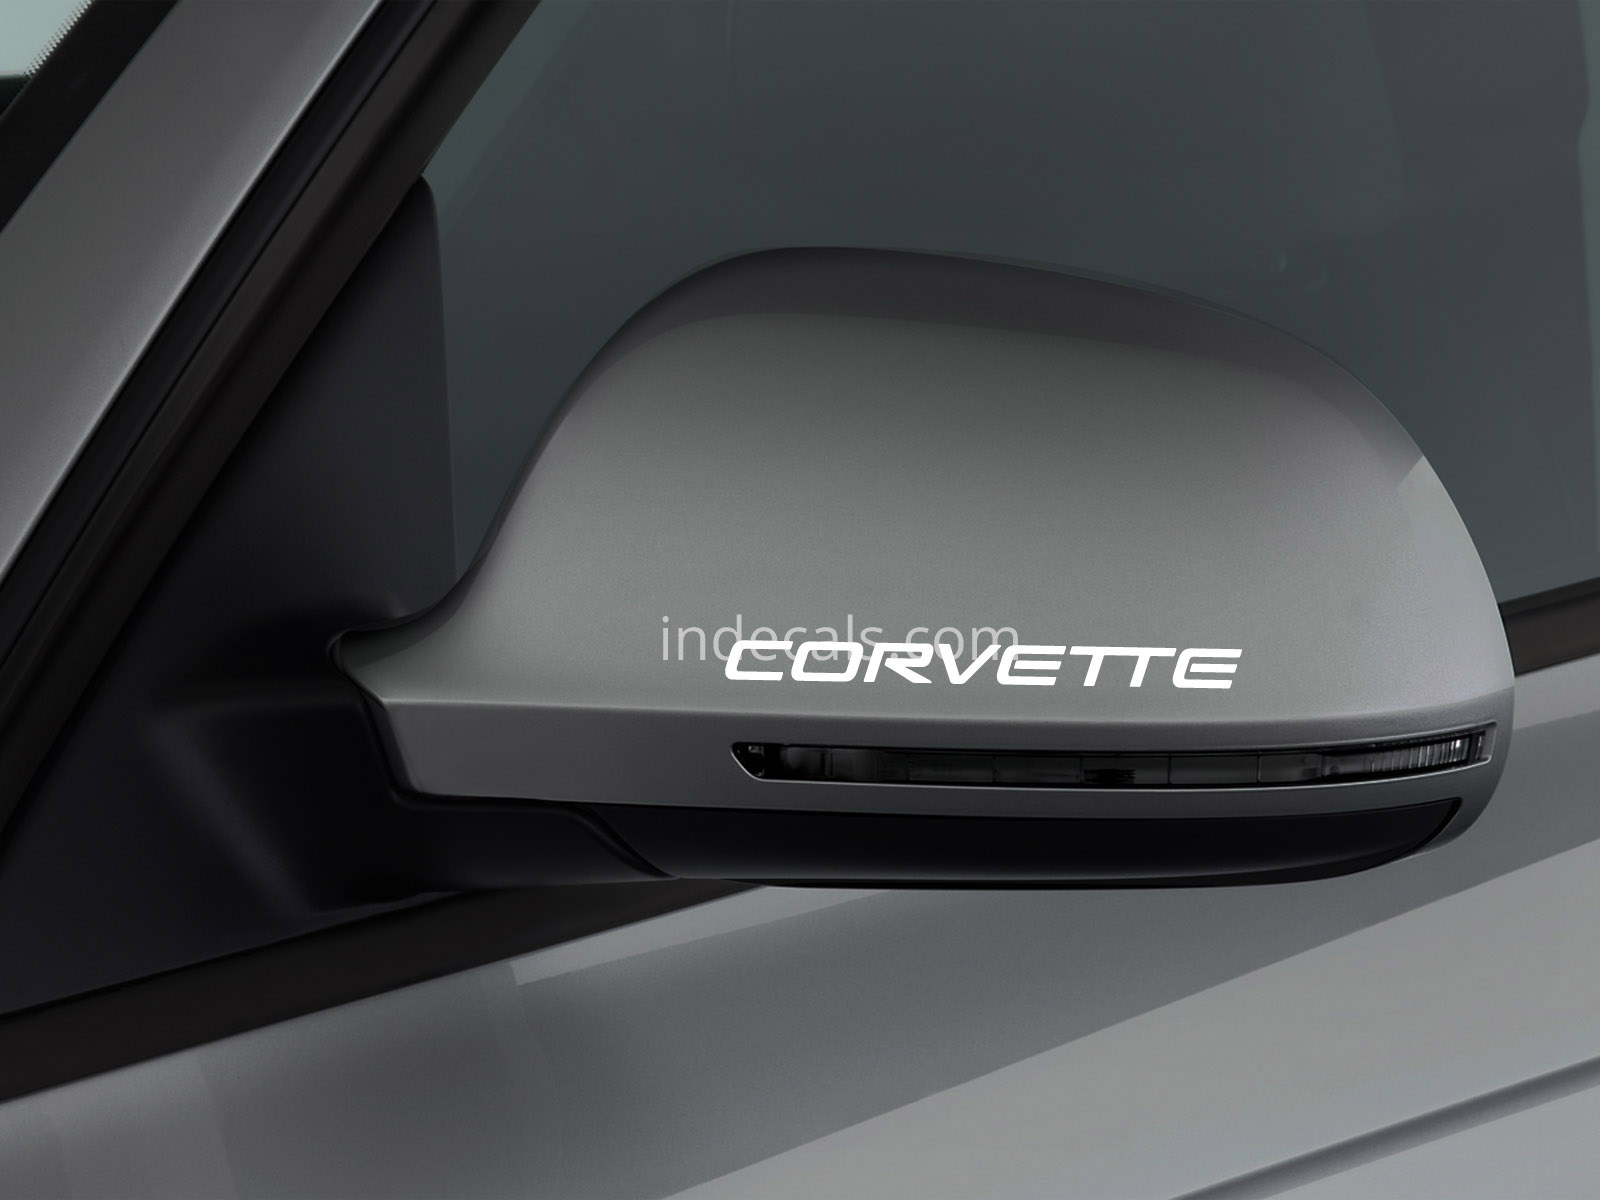 3 x Corvette Stickers for Mirror - White